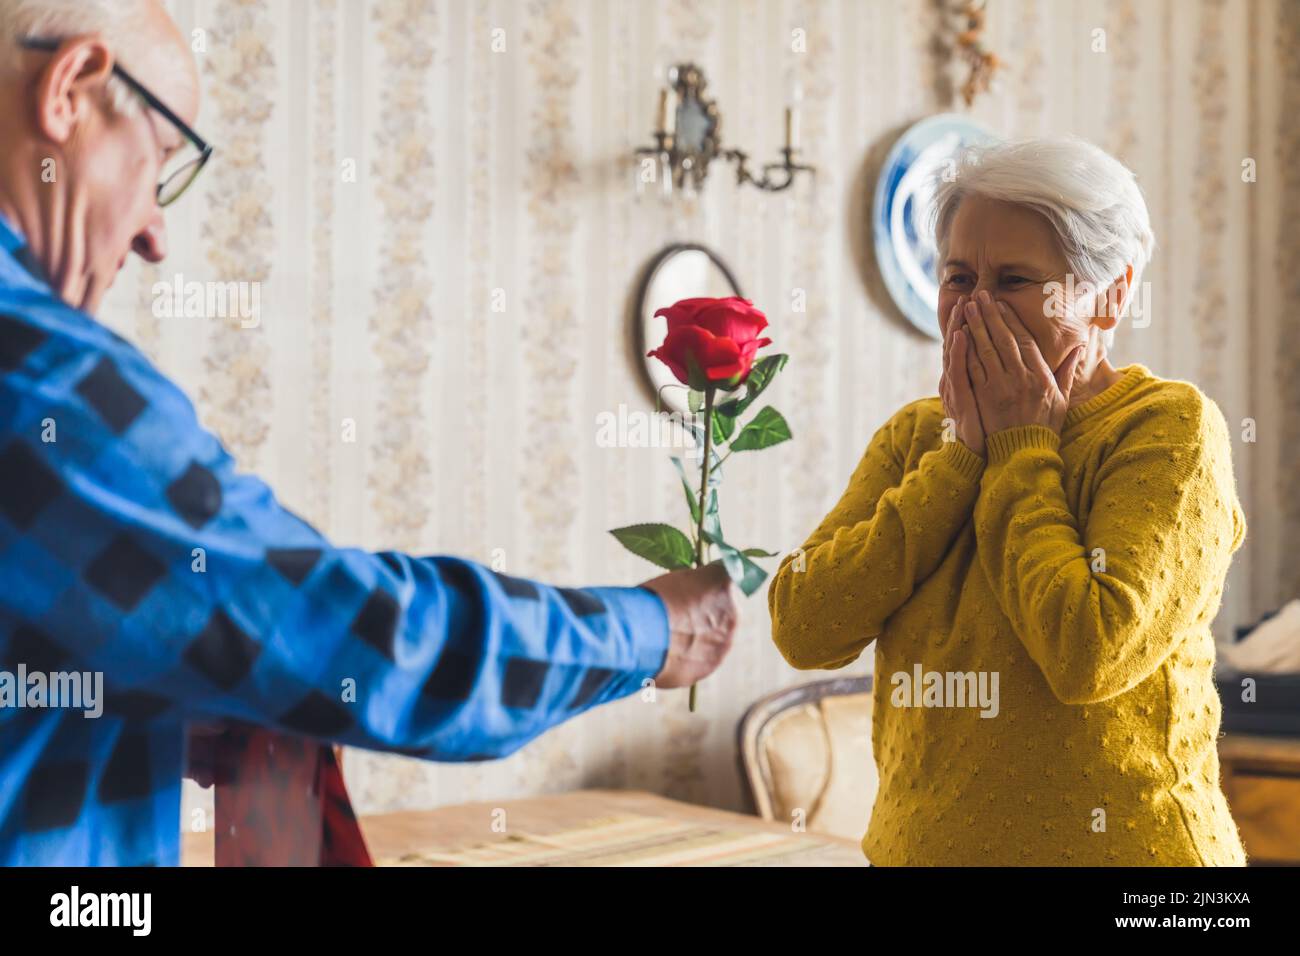 Amorevole marito anziano caucasico che sorprende sua moglie con una rosa rossa e una borsa regalo il giorno di San Valentino. Una sorpresa inaspettata per una donna. Foto di alta qualità Foto Stock